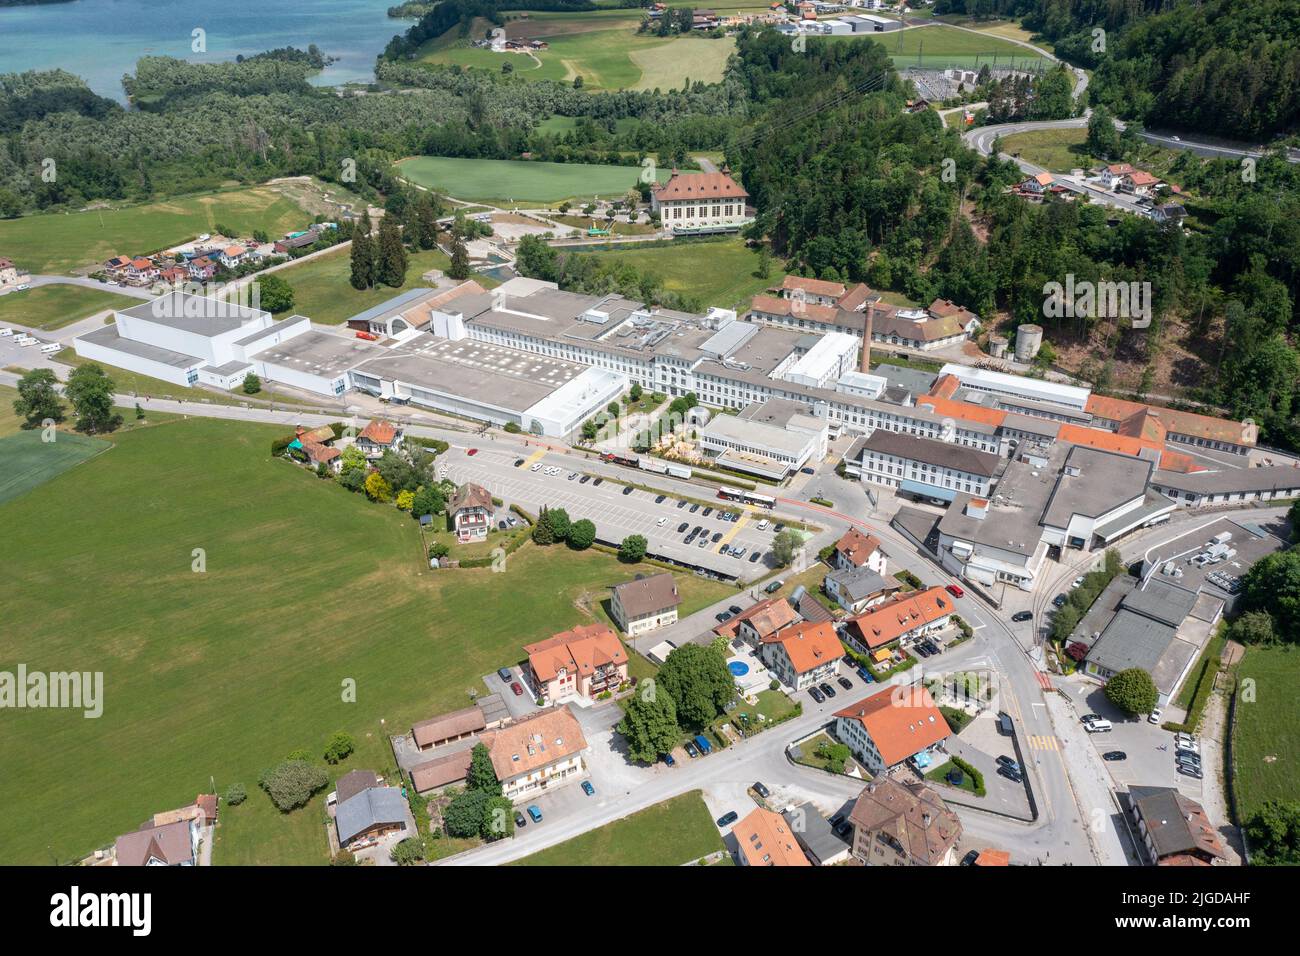 Maison Cailler, Schokoladenfabrik, Broc, Schweiz Stockfoto